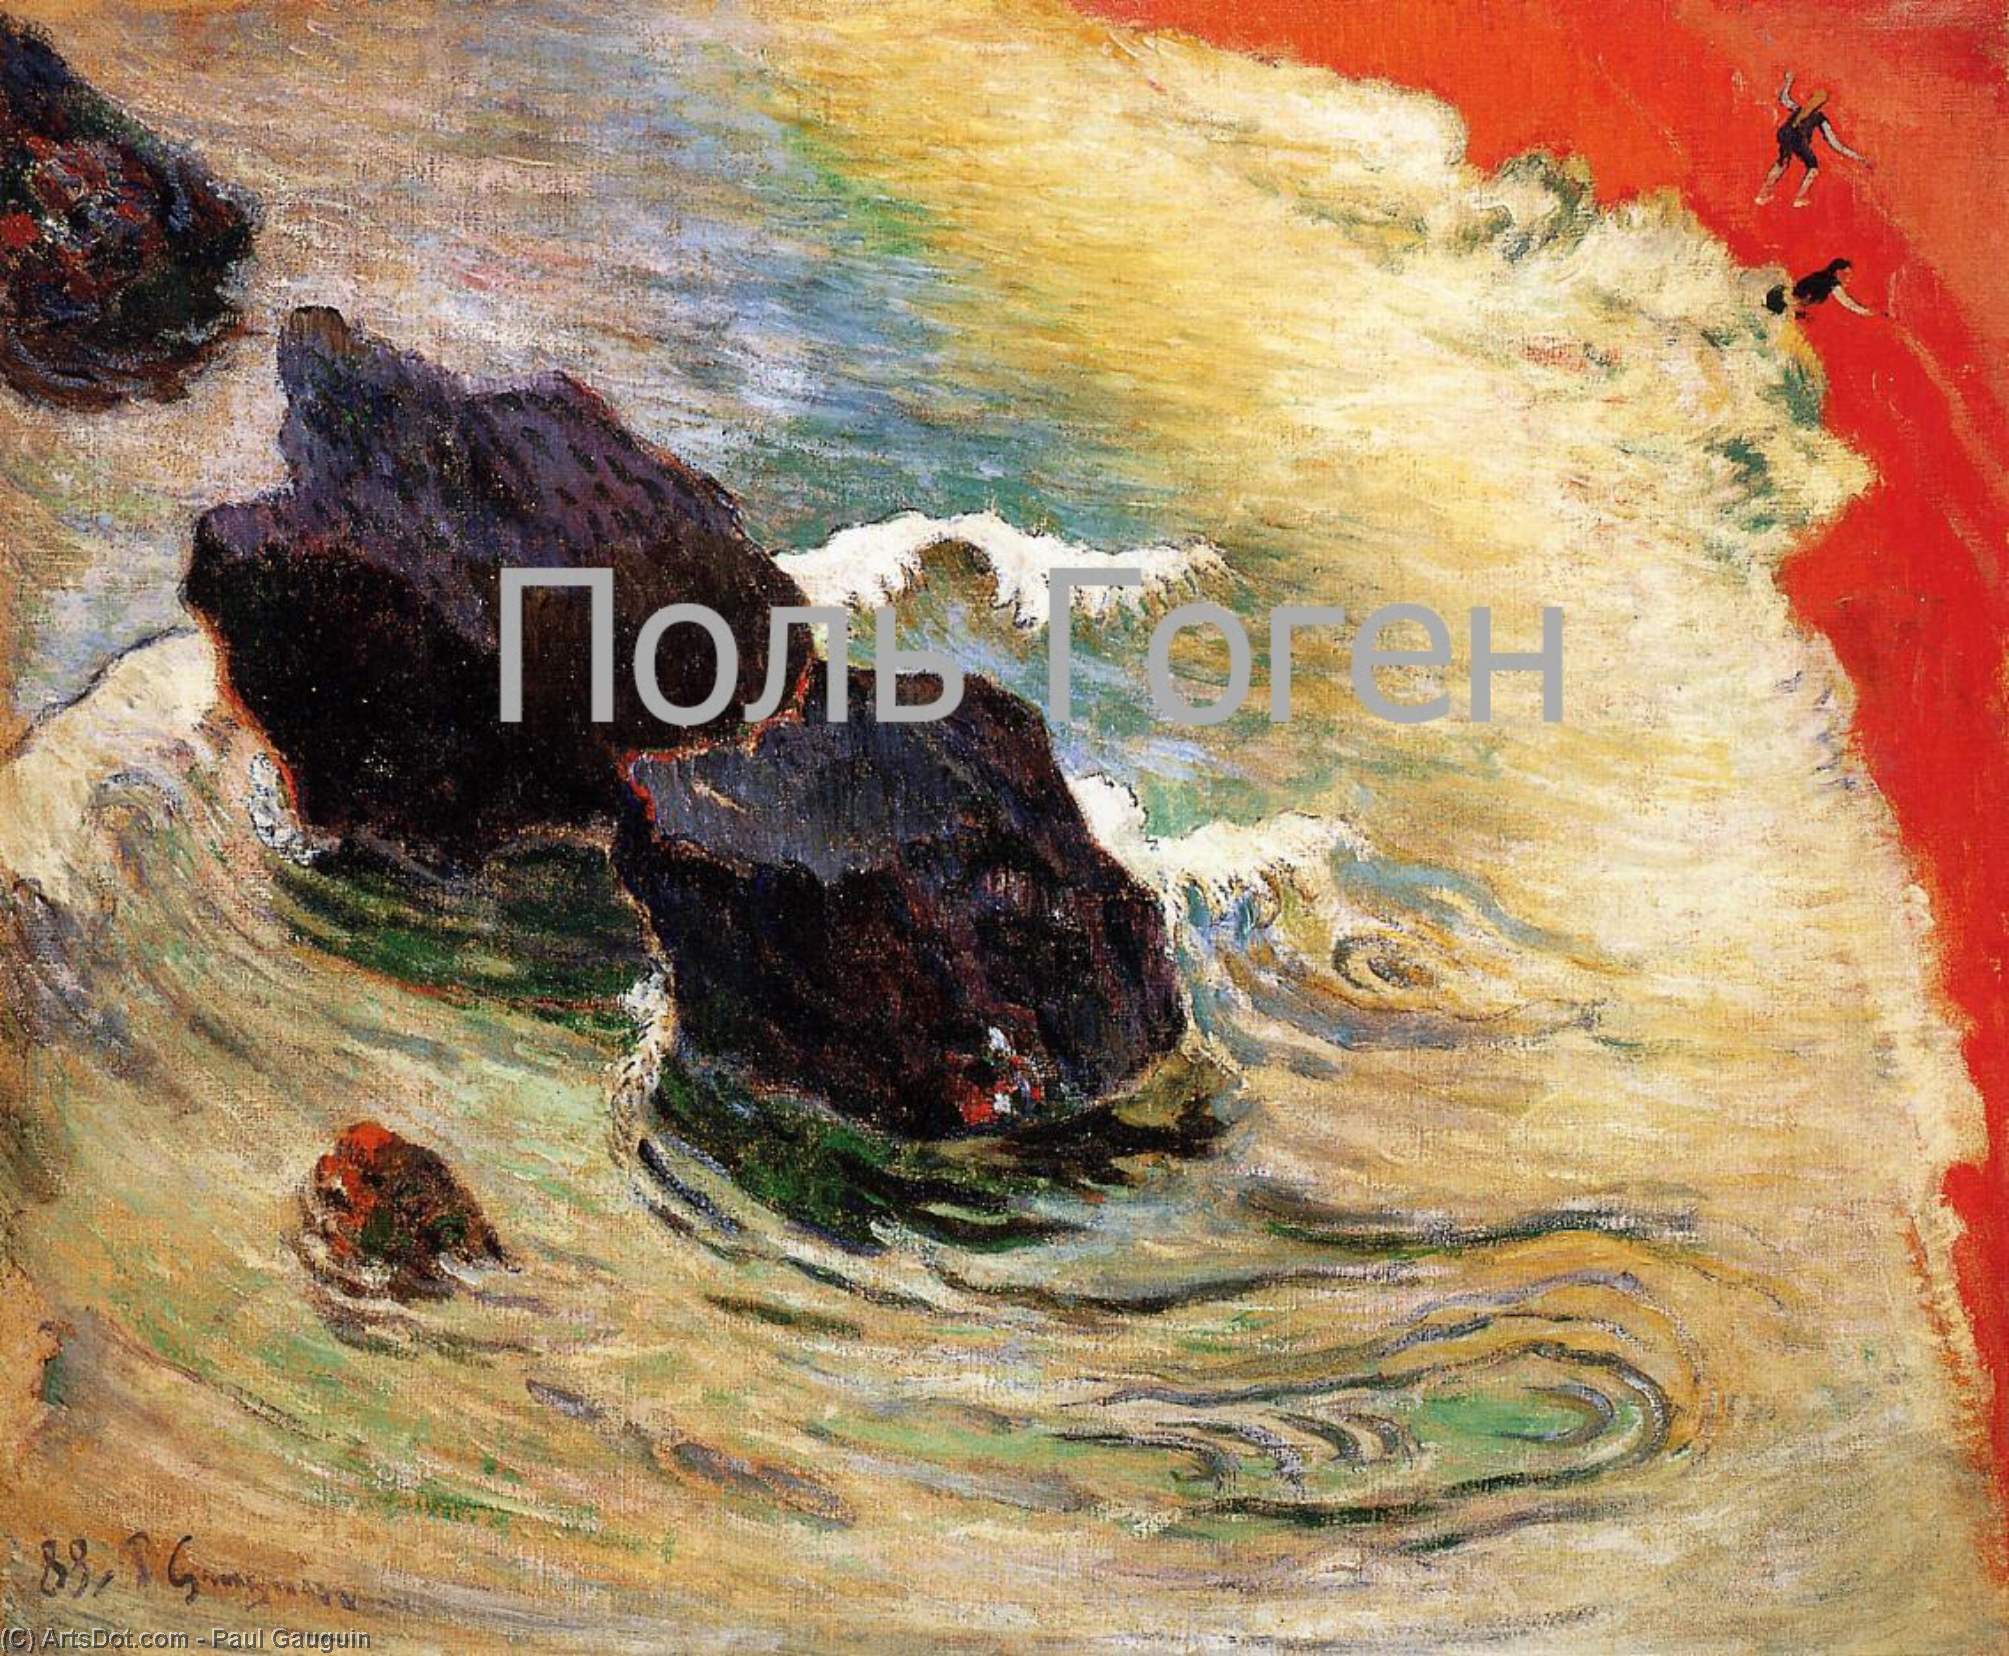 Wikoo.org - موسوعة الفنون الجميلة - اللوحة، العمل الفني Paul Gauguin - The wave